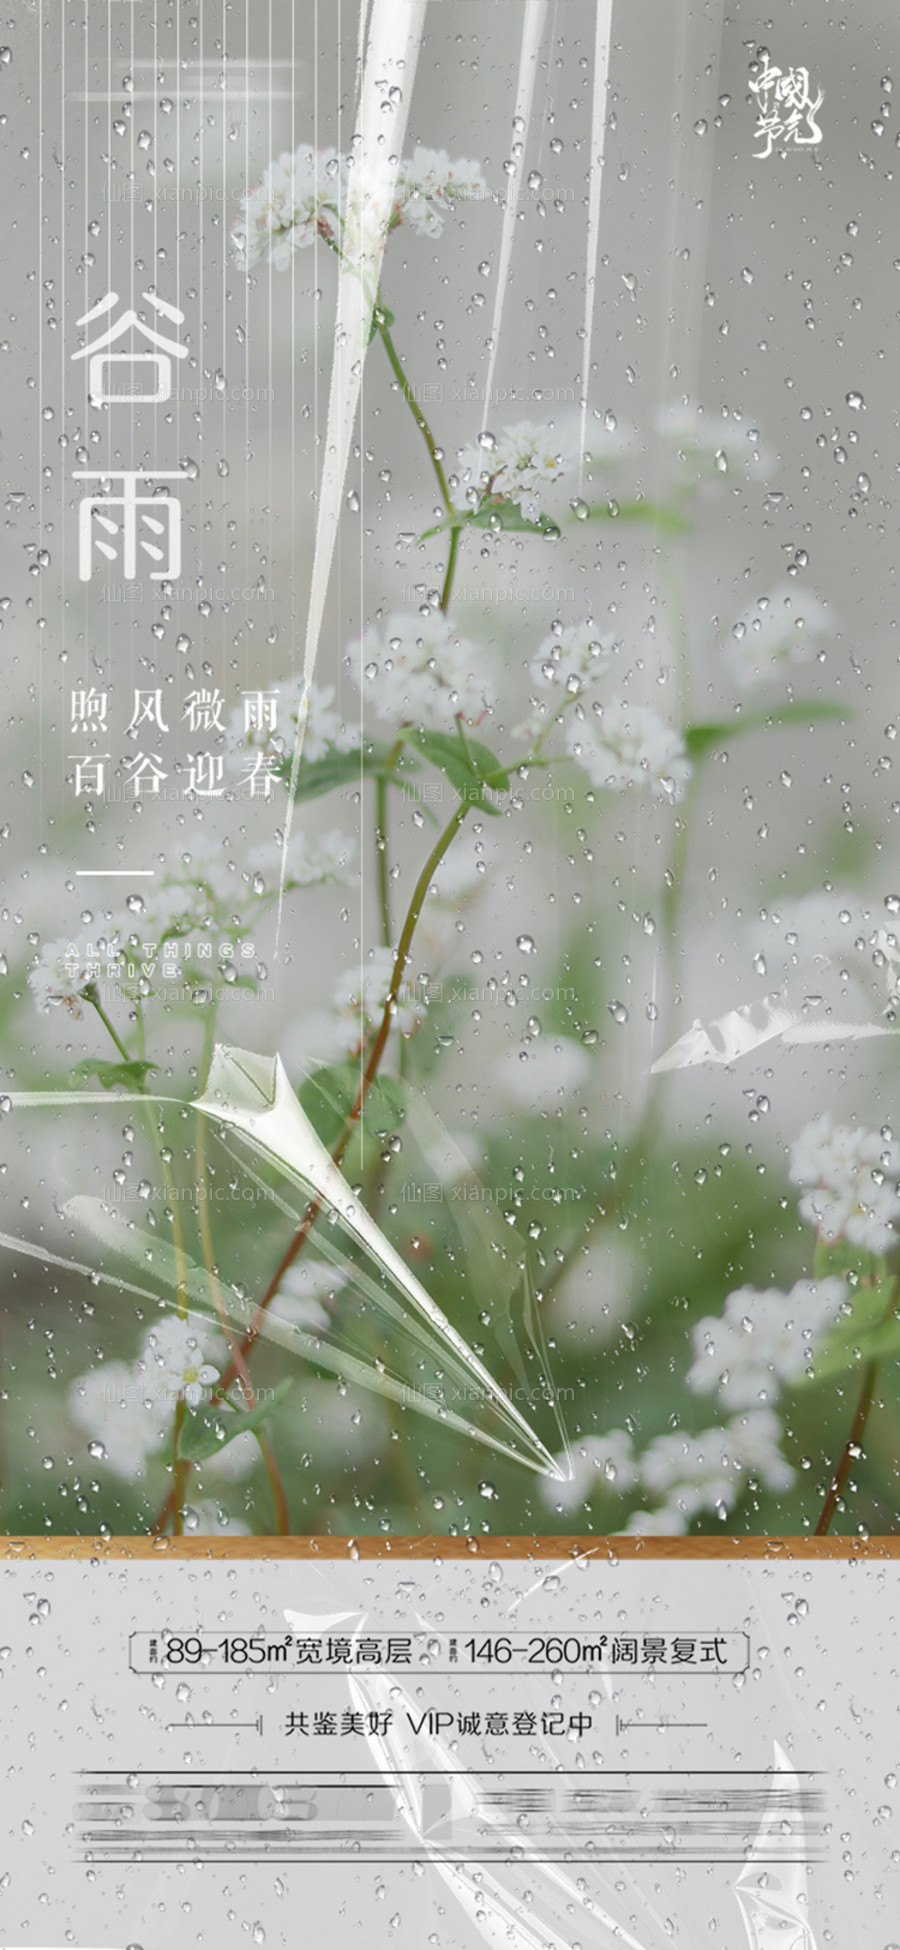 素材乐-谷雨节气海报